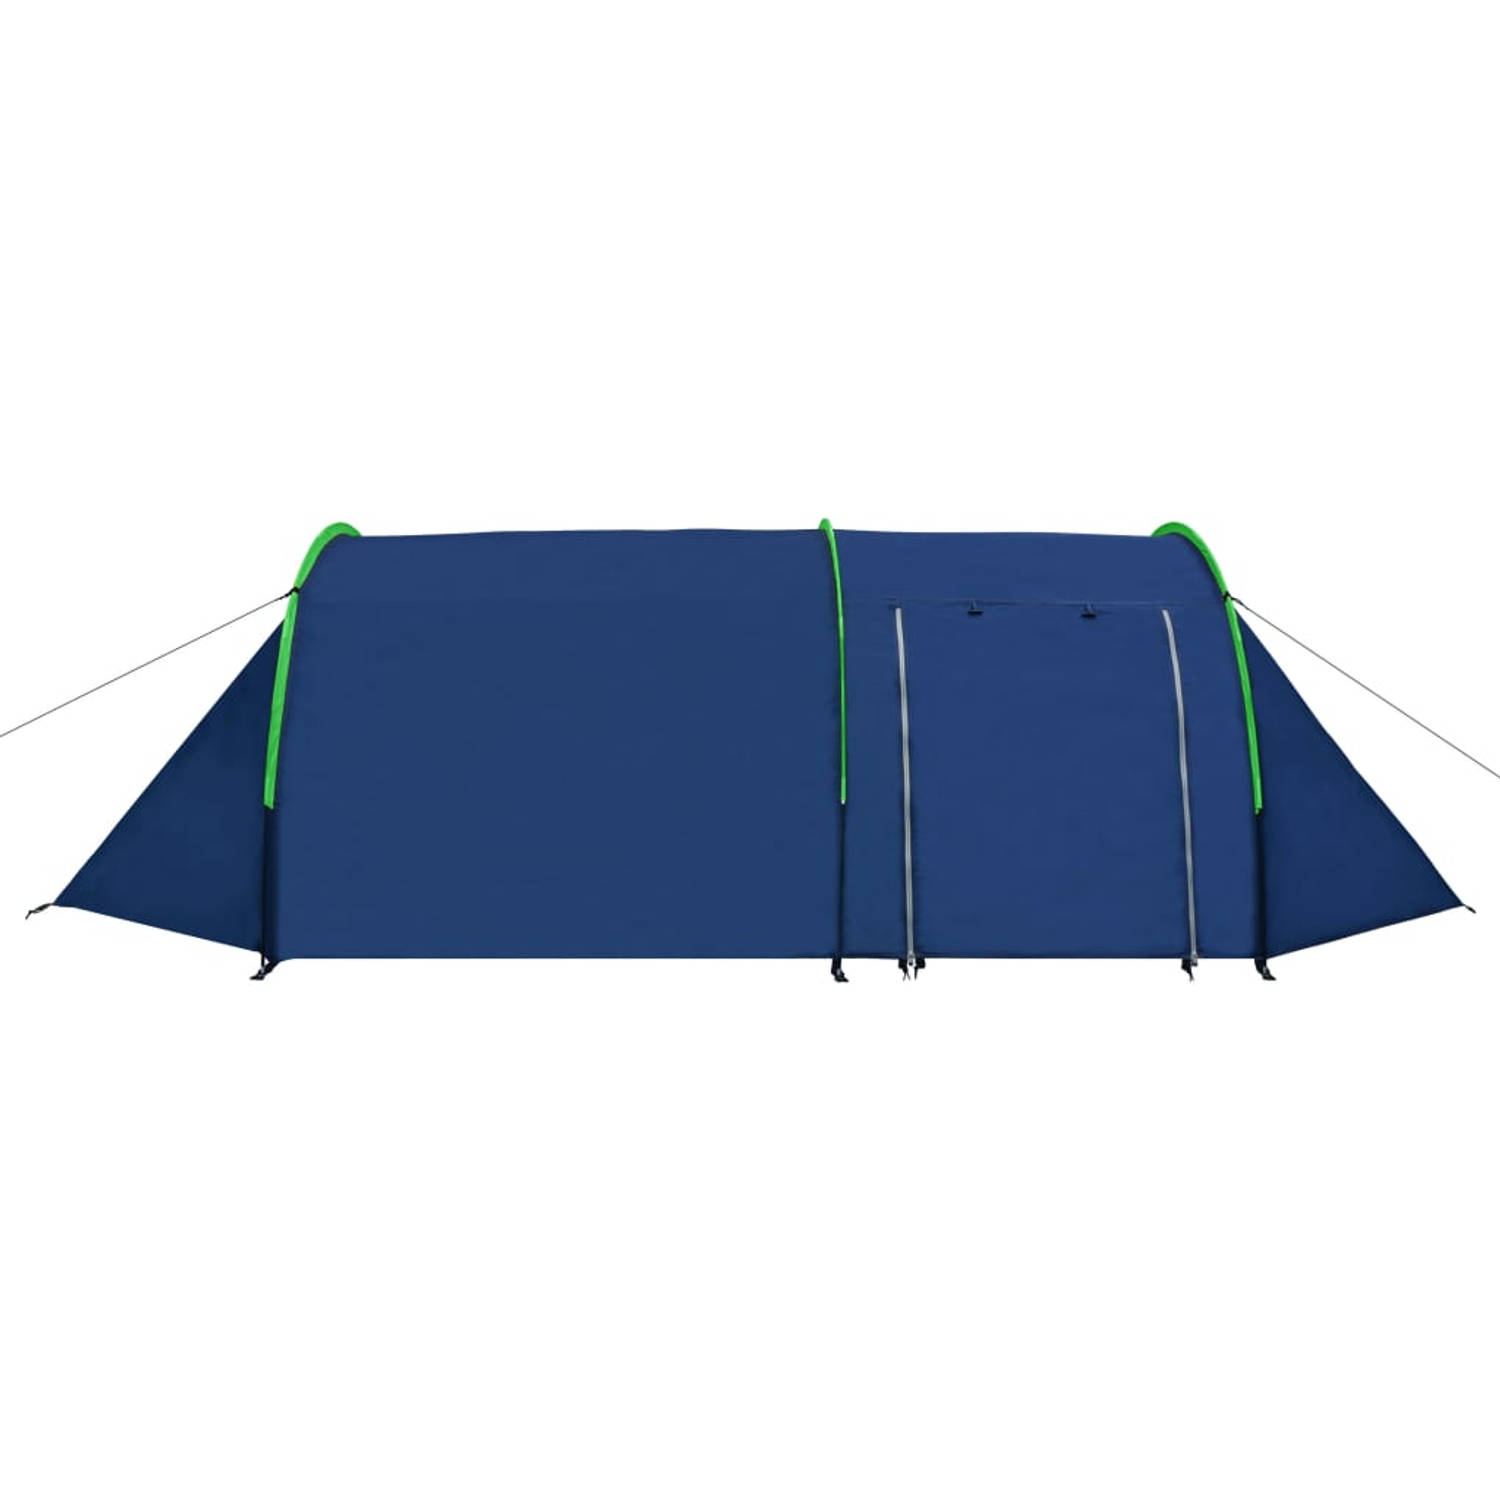 The Living Store Tent Deluxe - 395x180x110 cm - voor 4 personen - marineblauw/groen